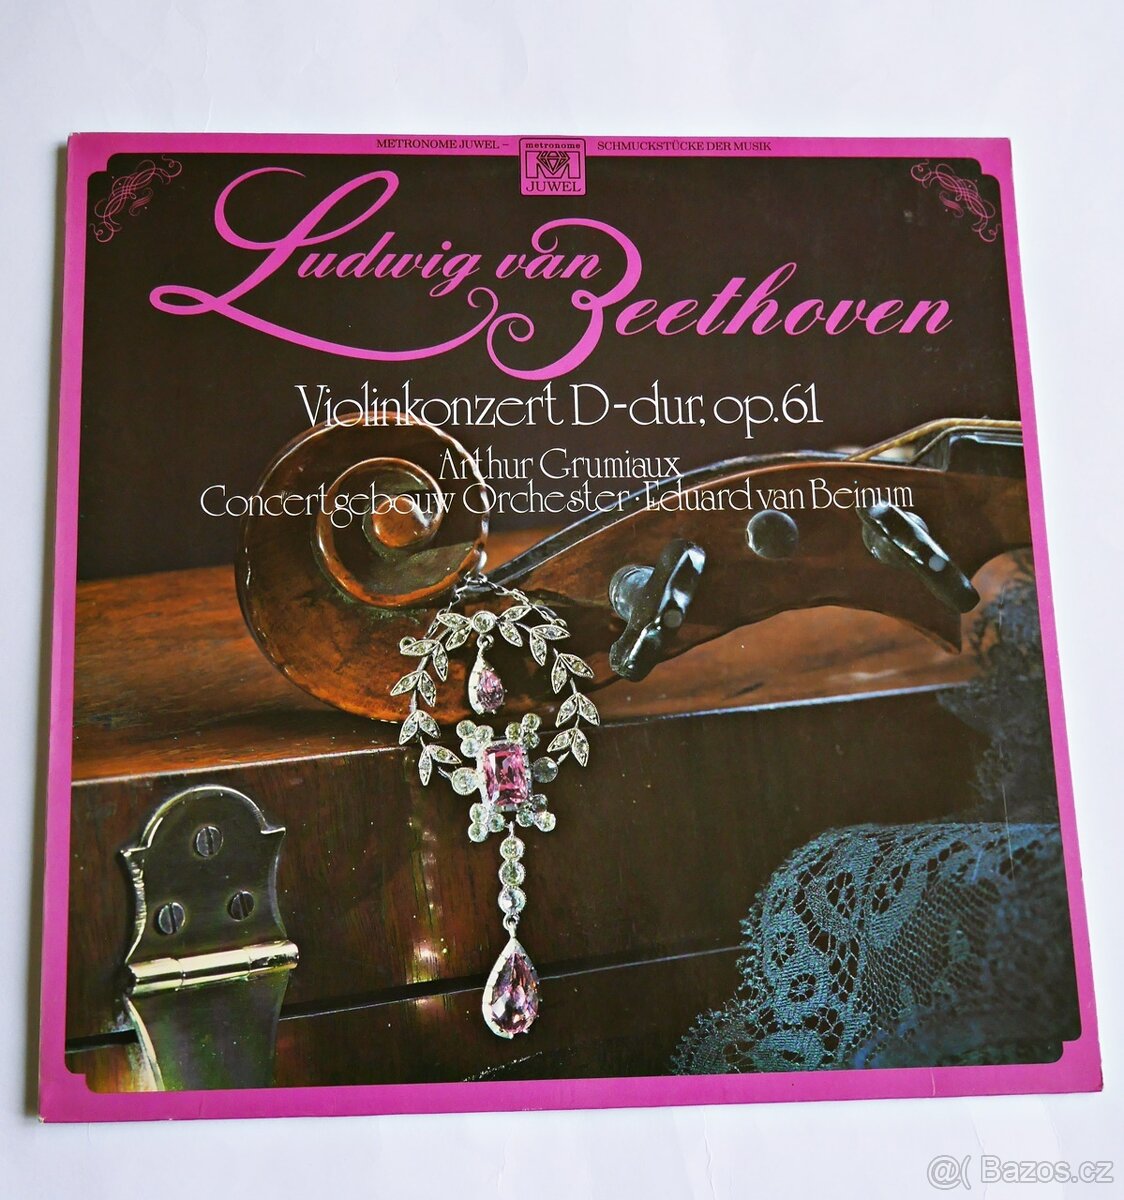 Beethoven - Violinkonzert D-dur, Op. 61 (LP)